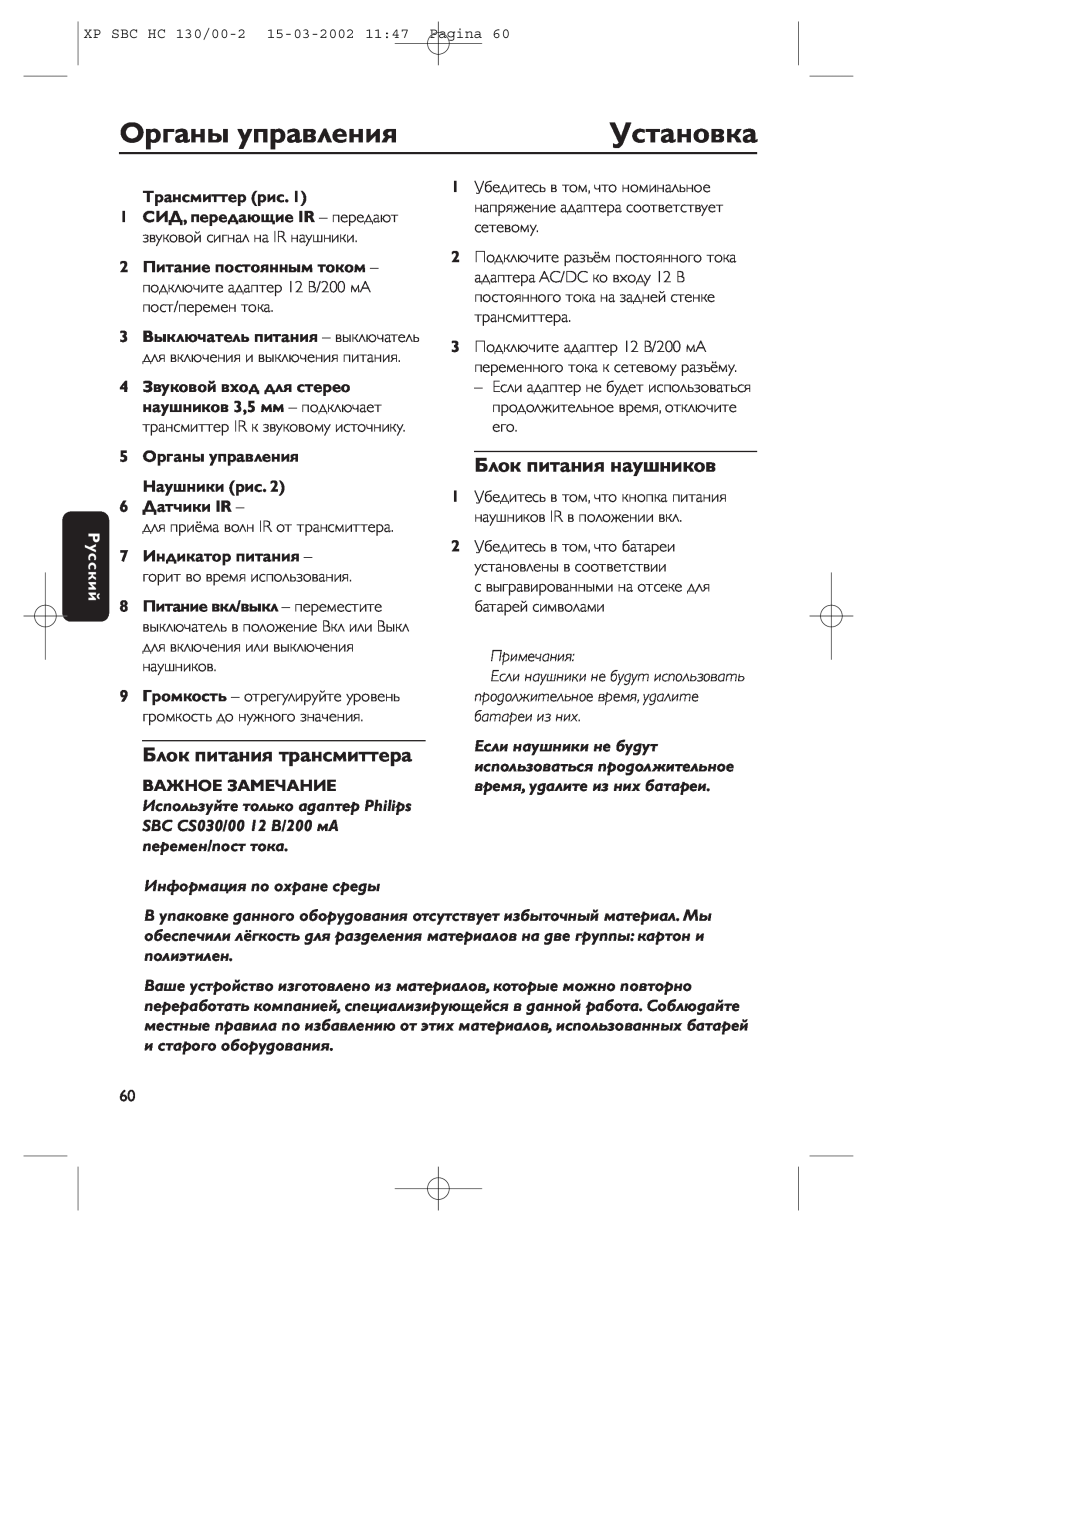 Philips SBC HC130 manual Оpганы упpавления, Установка, Блок питания наушников, Блок питания тpансмиттеpа, Тpансмиттеp рис 